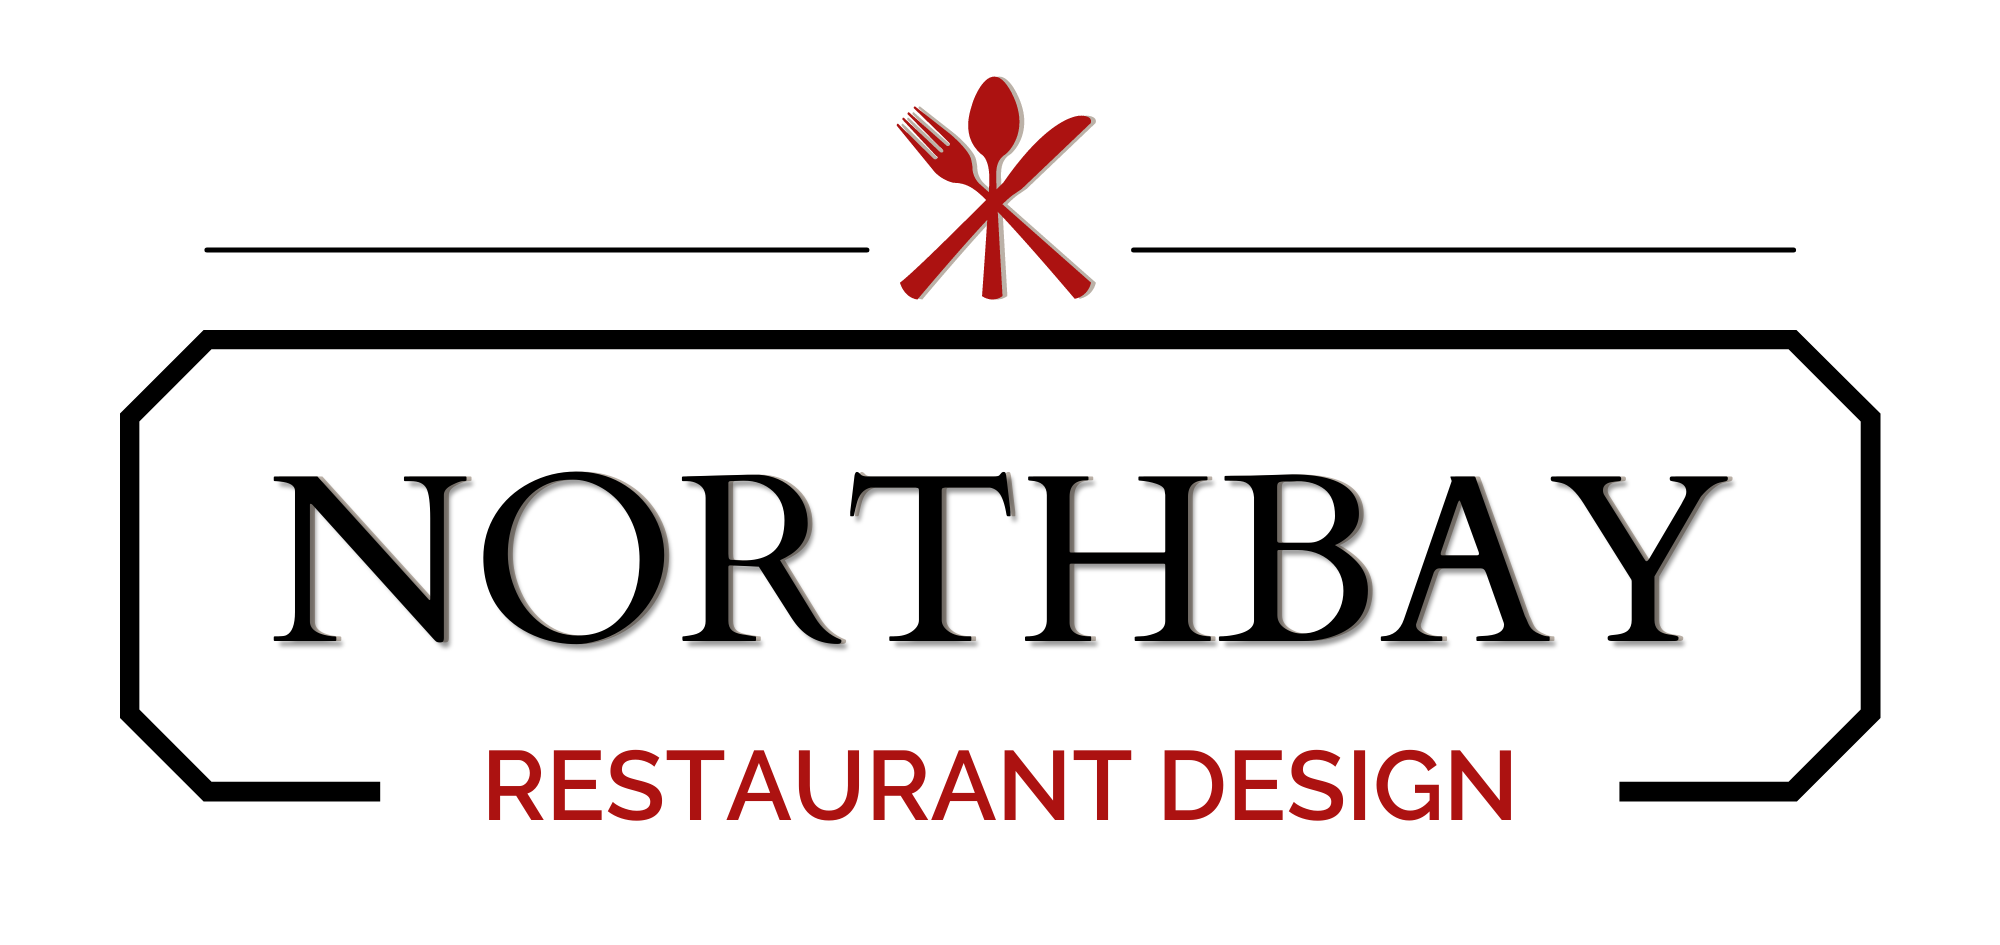 Northbay Restaurant Design